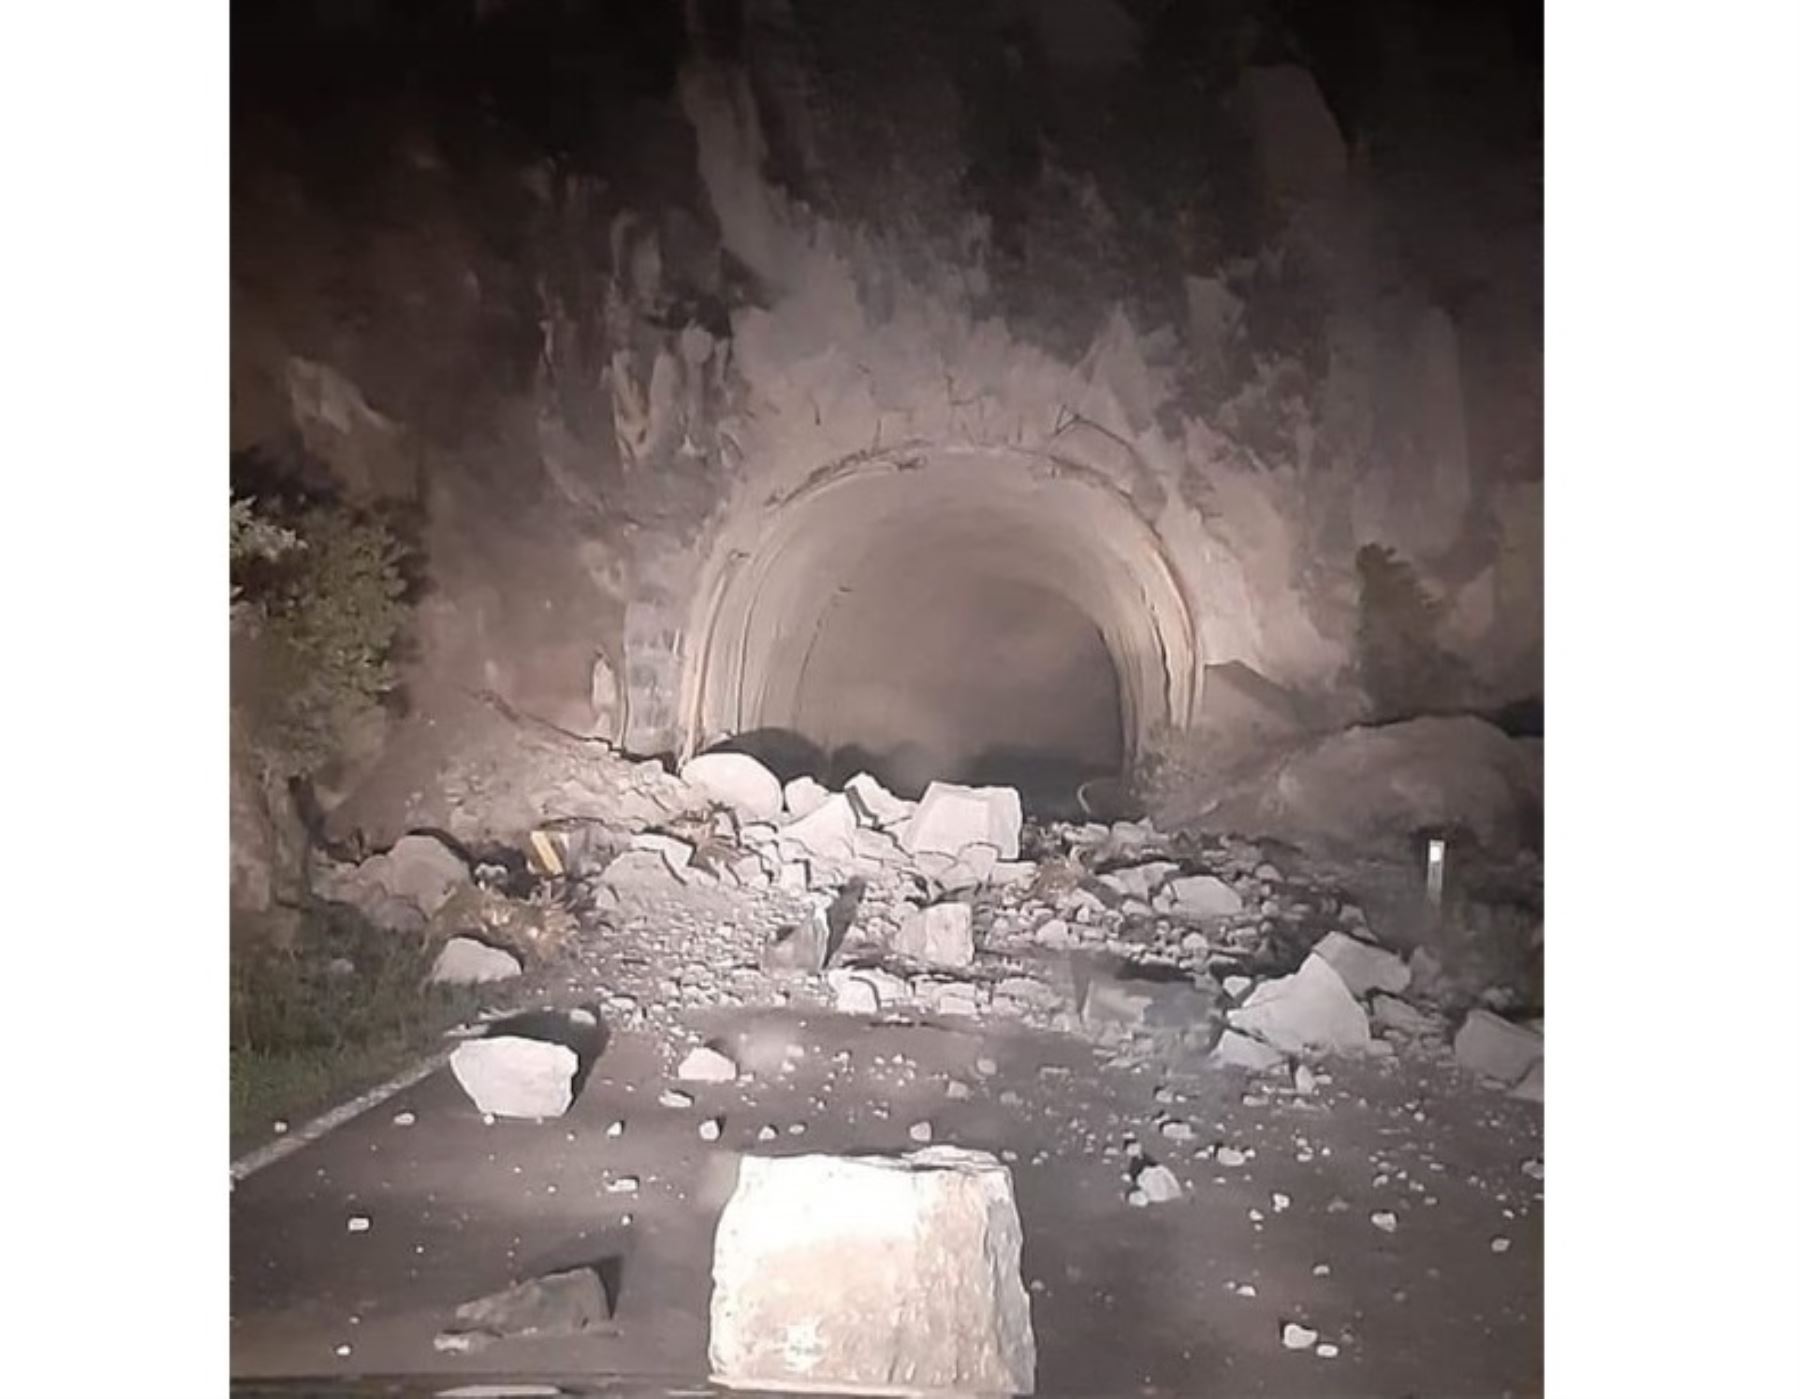 Autocolca suspendió las visitas turísticas al mirador Cruz del Cóndor del valle del Colca por caída de rocas en la vía a causa del fuerte sismo de magnitud 5.5 registrado en la provincia de Caylloma, región Arequipa. ANDINA/Difusión